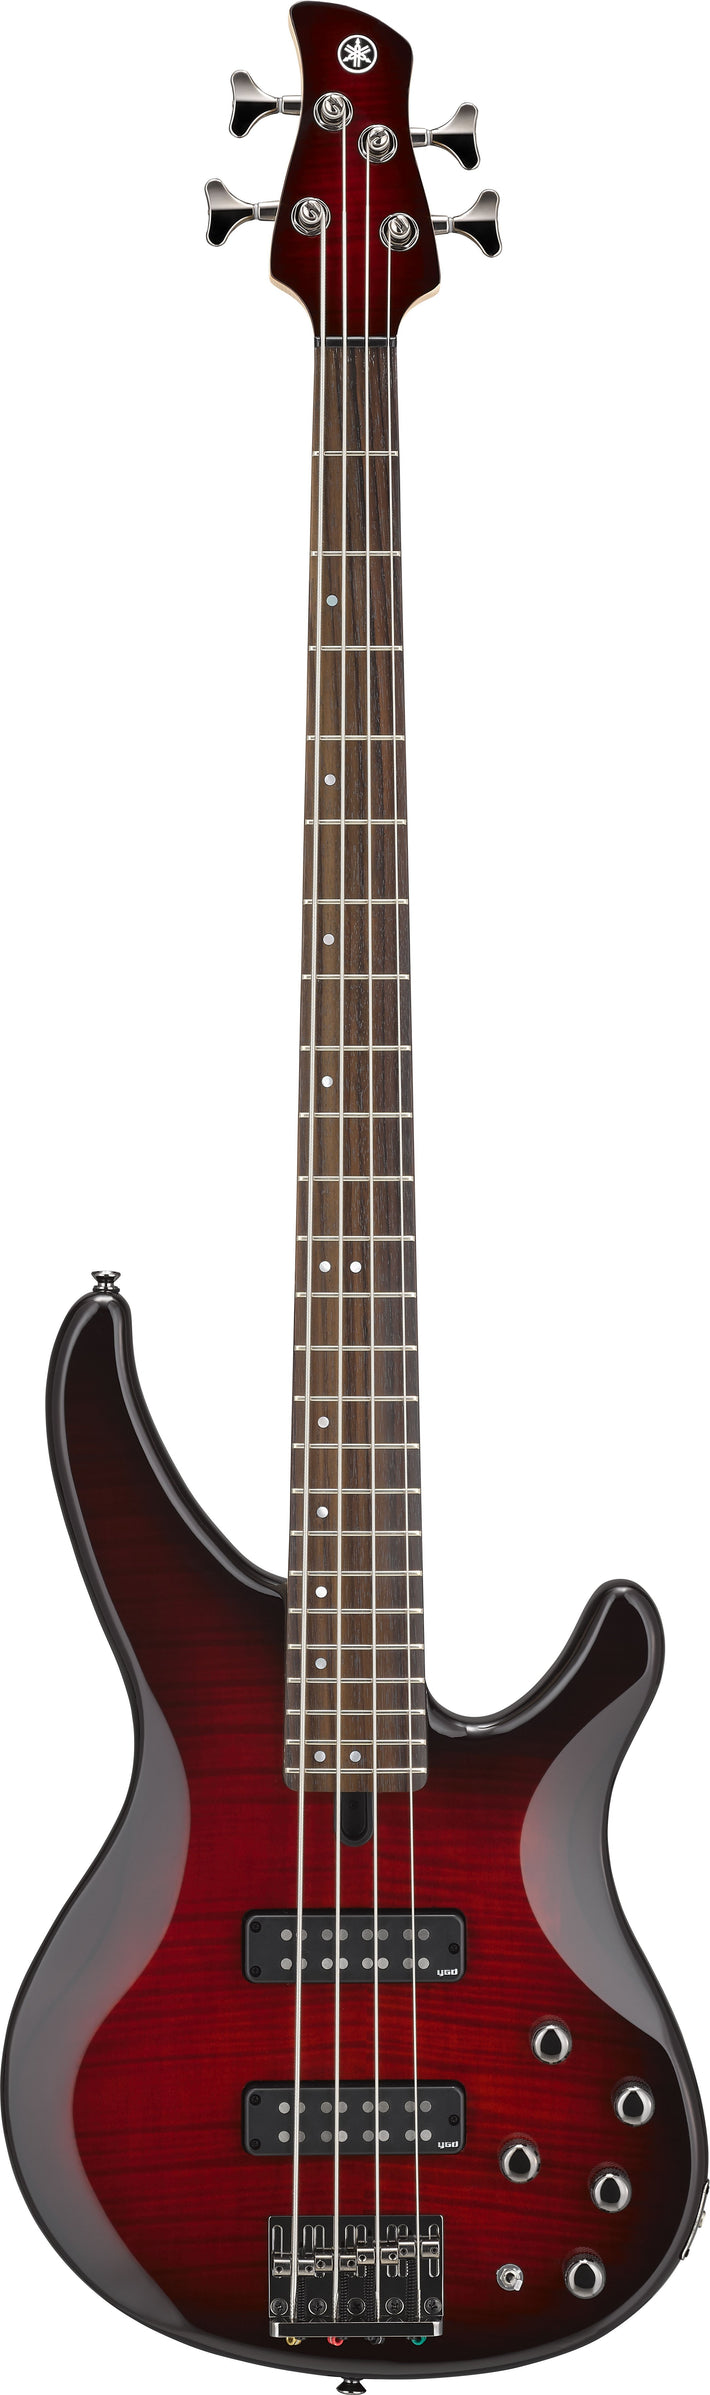 Yamaha TRBX604 4 String Bass Guitar - Dark Red Burst-Buzz Music